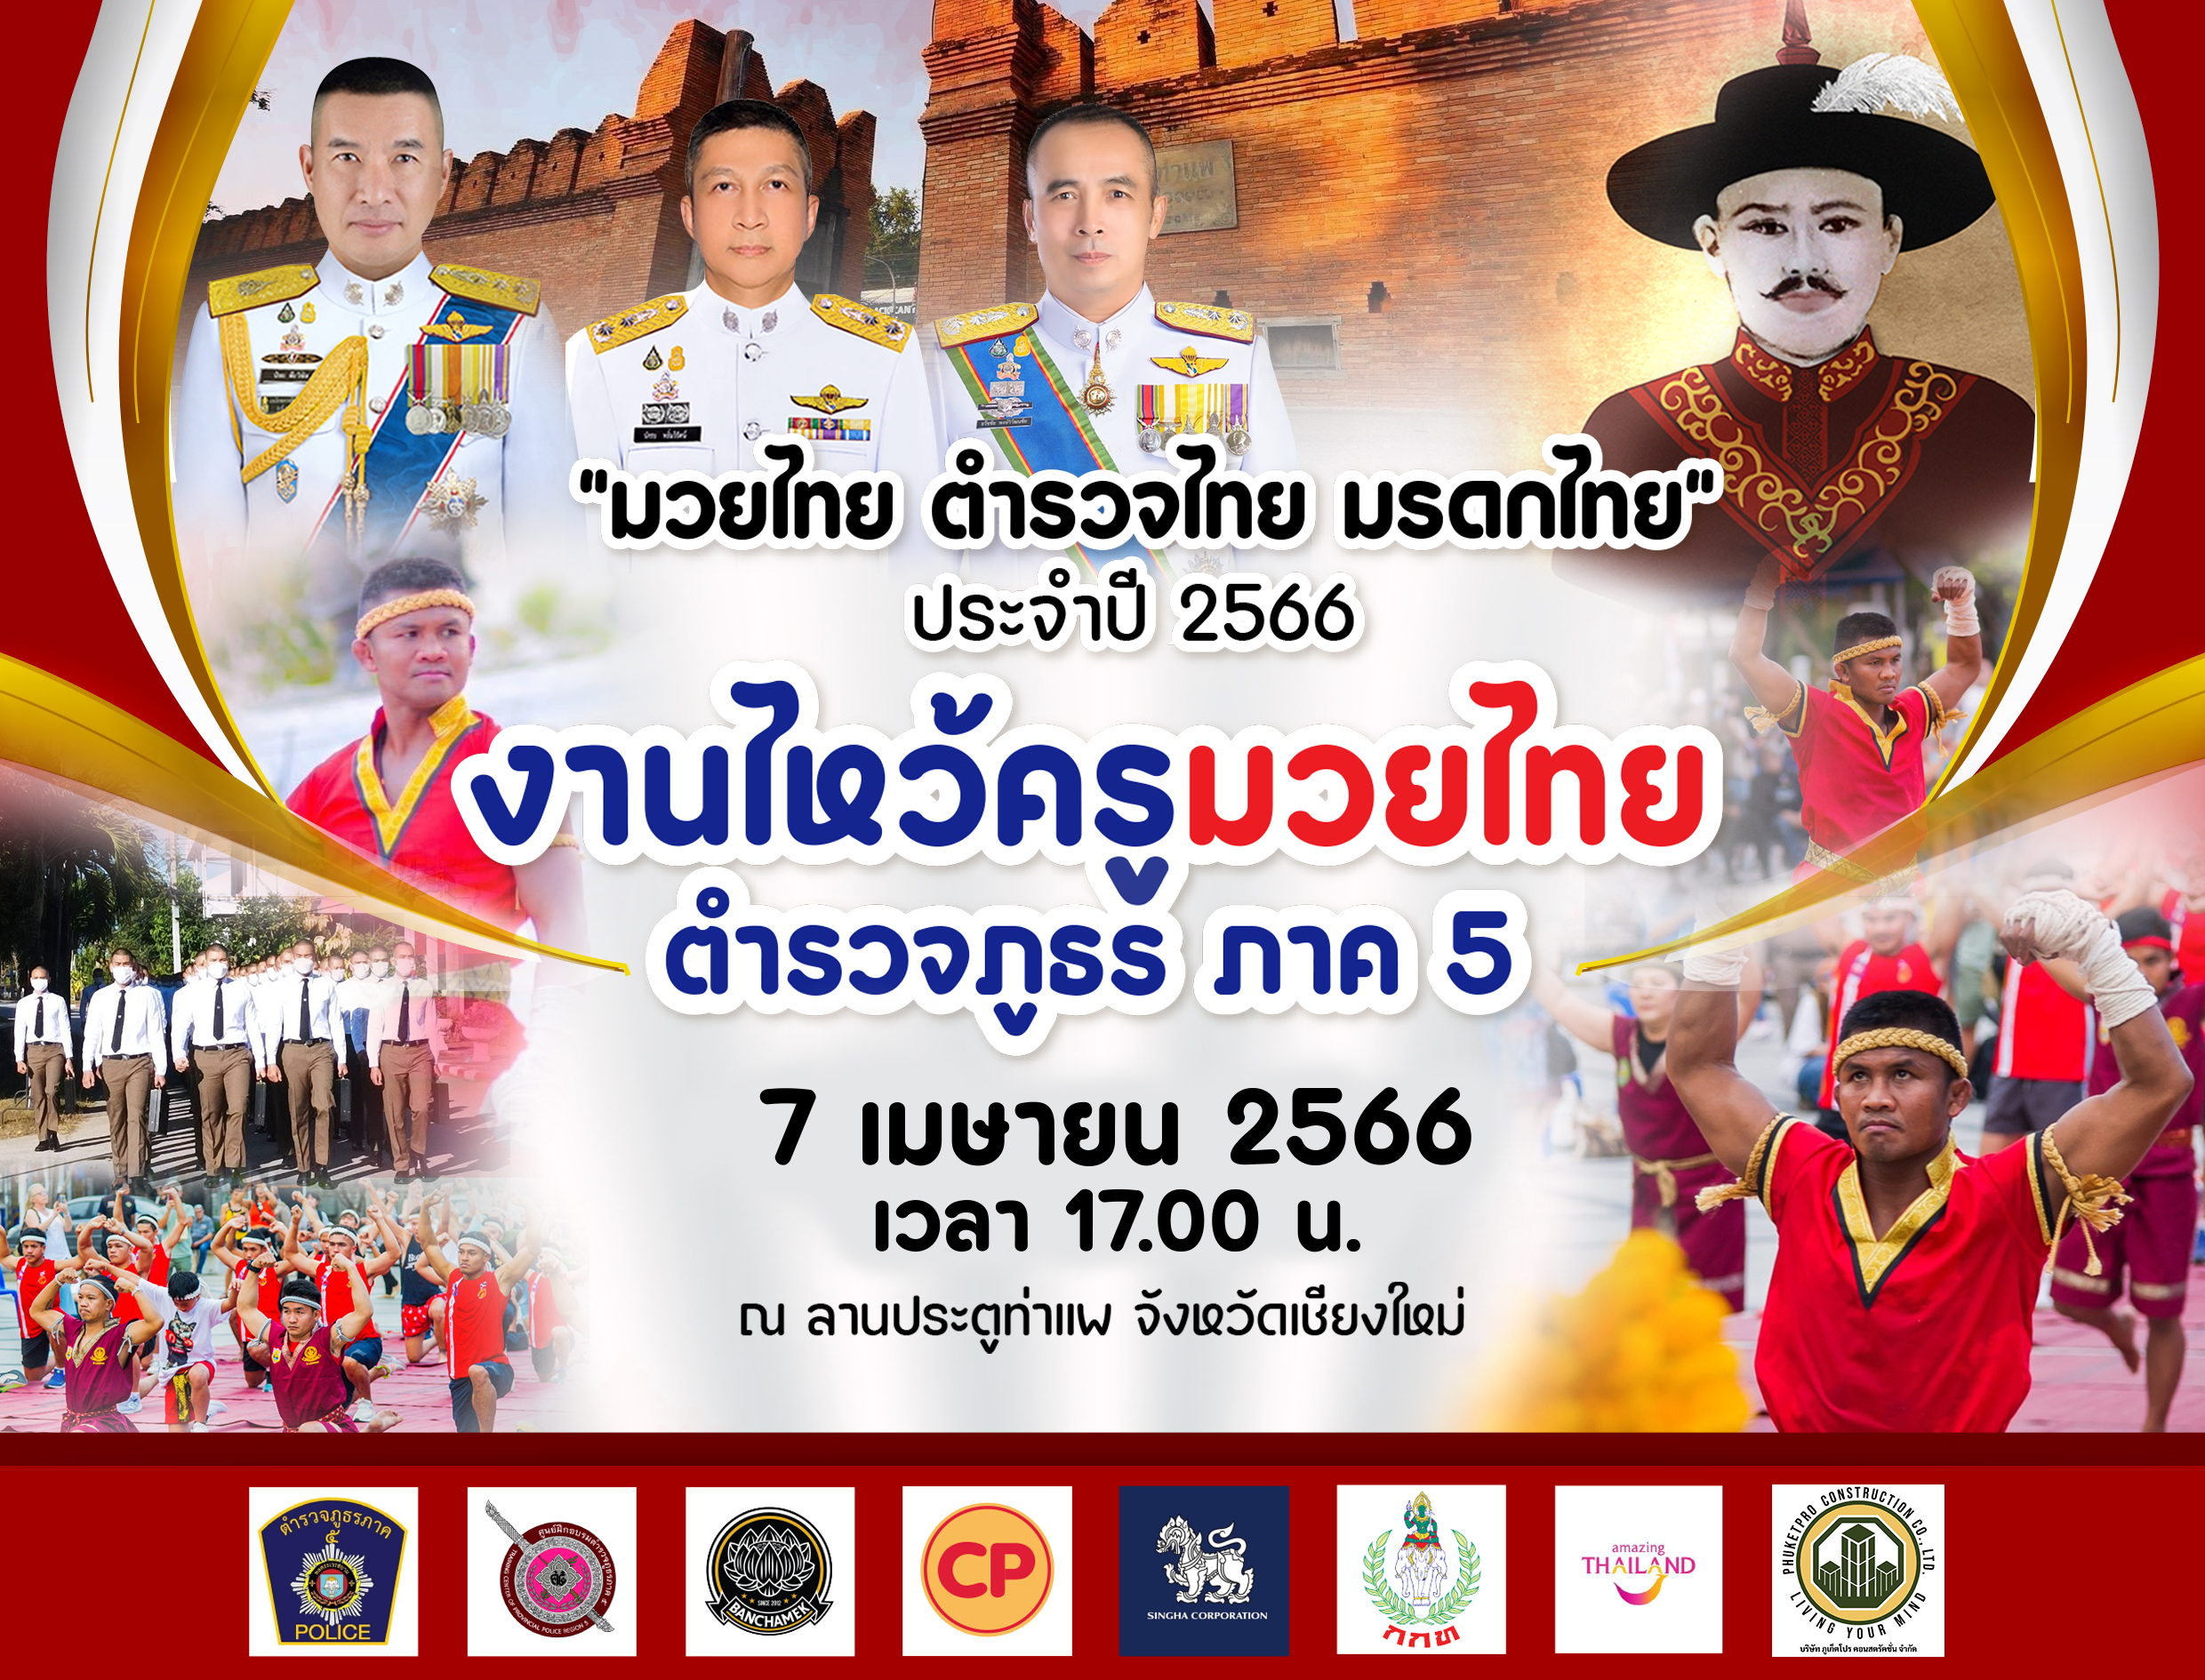 ตำรวจภูธรภาค 5 กำหนดจัดงานตามโครงการ “มวยไทย ตำรวจไทย มรดกไทย” ประจำปี 2566 ในวันศุกร์ที่ 7 เมษายน 2566 เวลา 17.00 น. ณ ลานประตูท่าแพ อำเภอเมือง จังหวัดเชียงใหม่